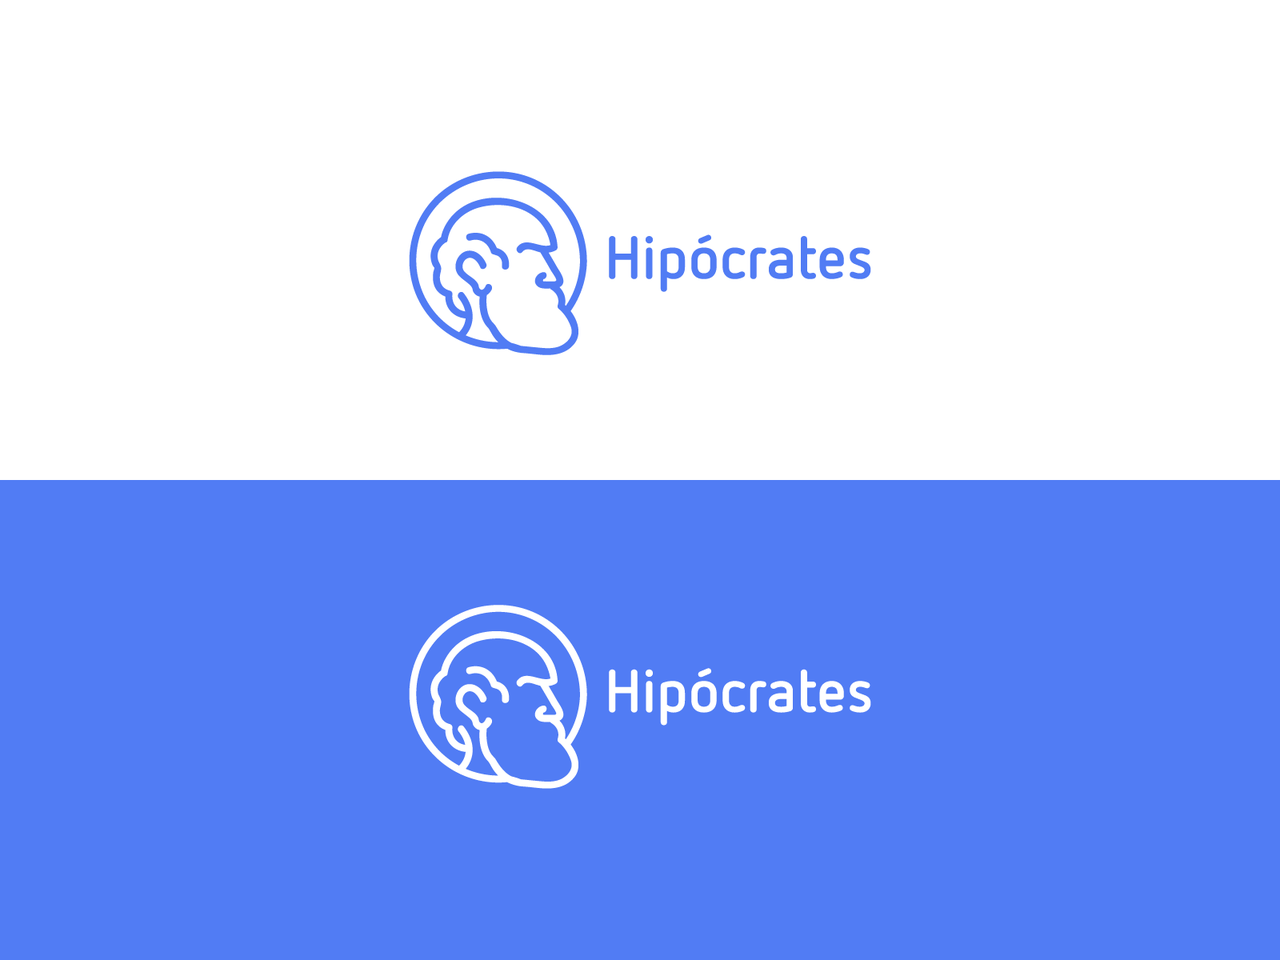 Hipocrates minimalistic logo design